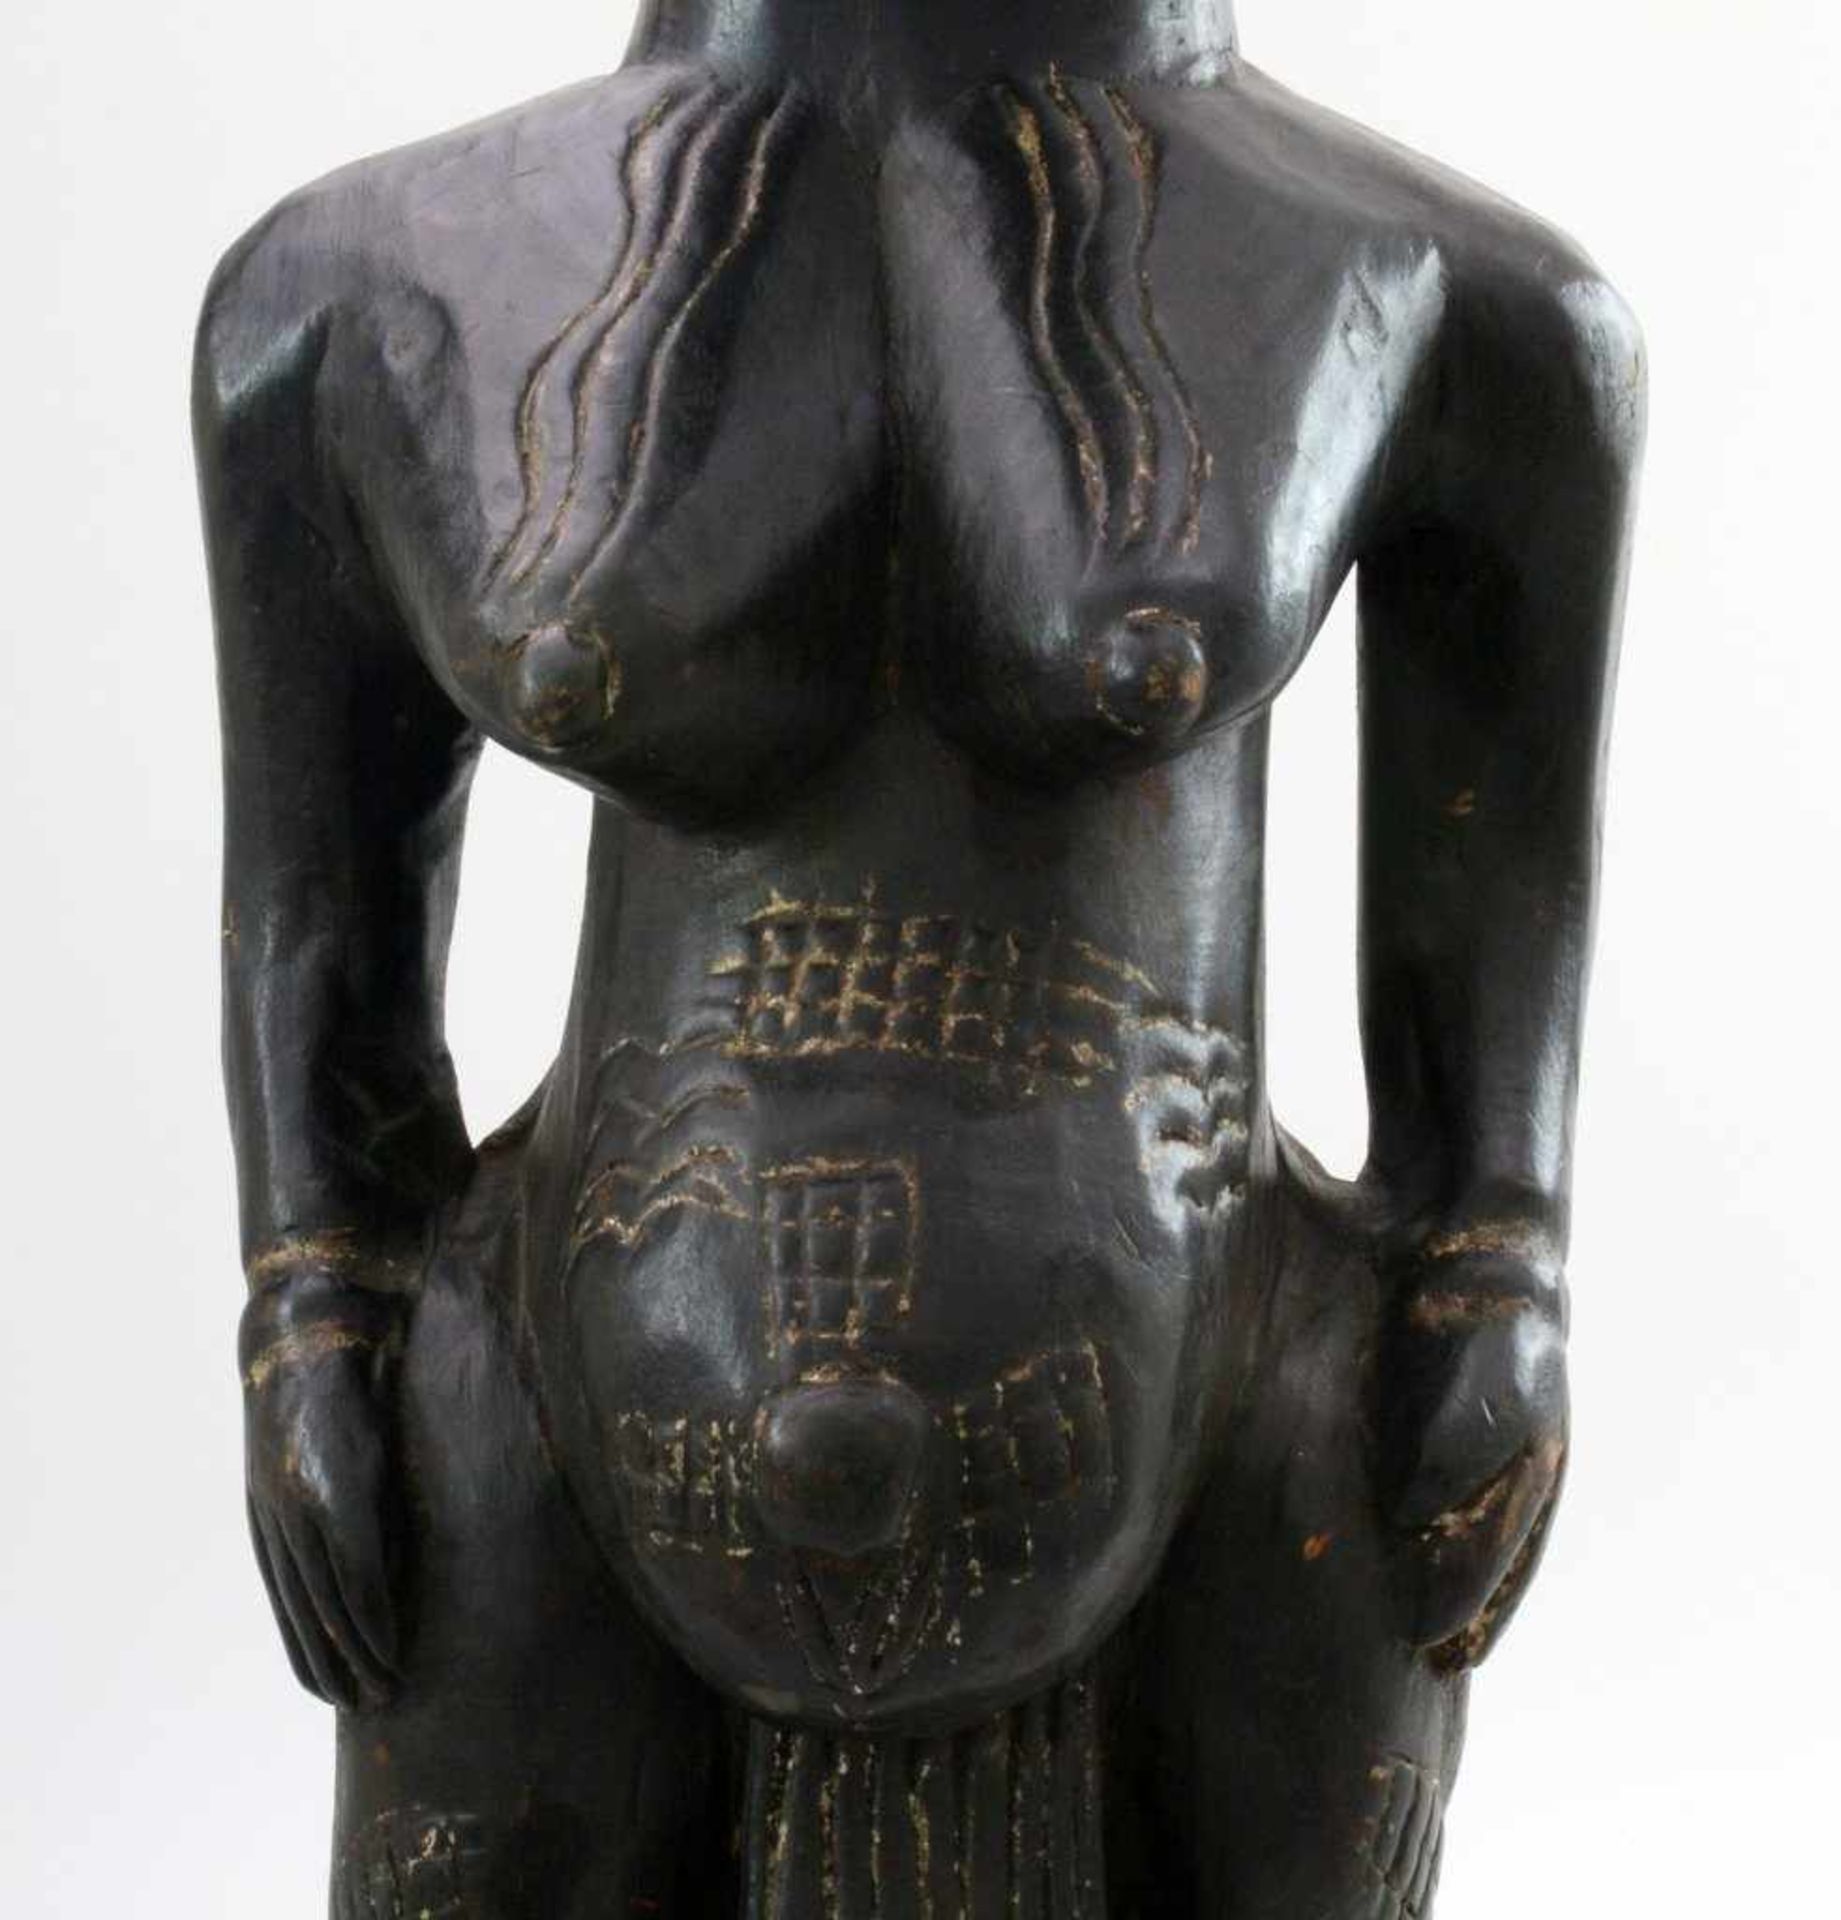 Westafrika - Große Ahnenfigur Schwarz / braun gefärbtes Tropenholz. Auf Stütze sitzende Figur, - Bild 6 aus 6